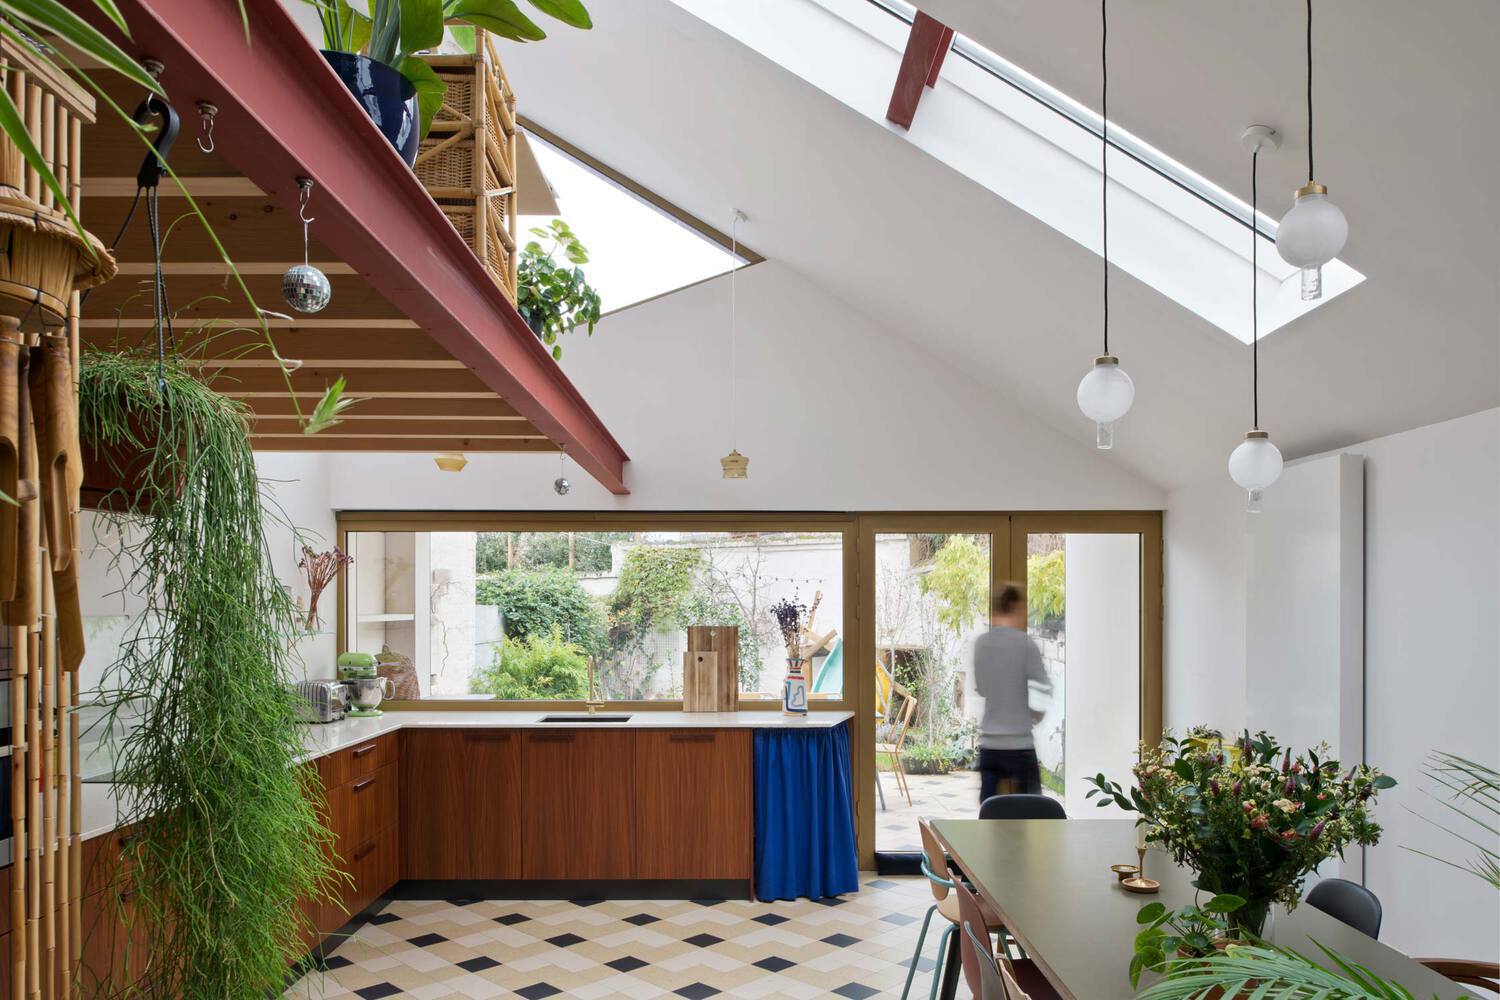 Как максимально эффективно использовать потолки двойной высоты в жилой архитектуре: изучите различные примеры